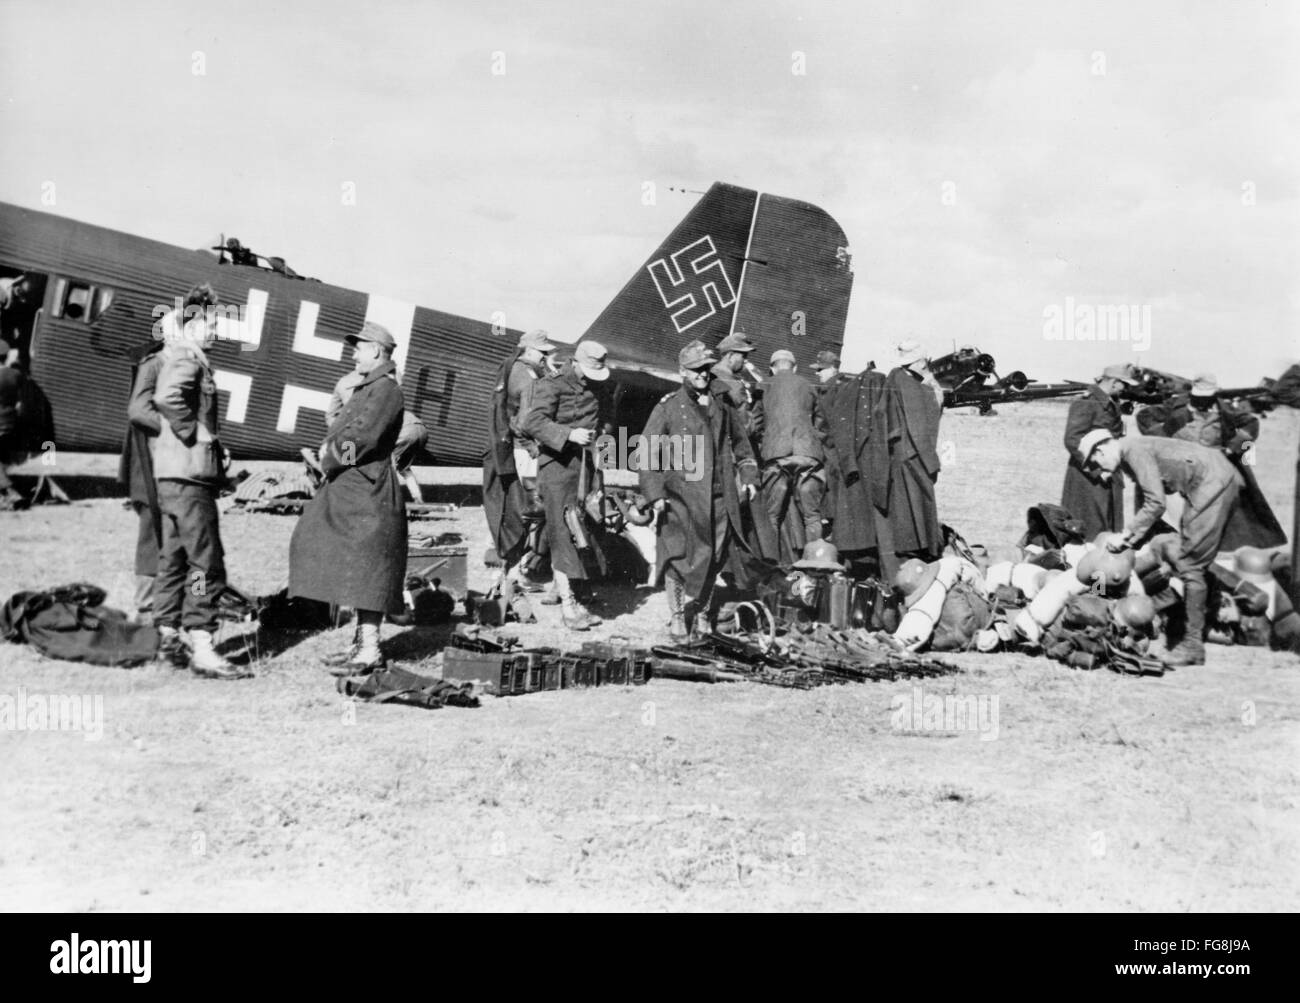 L'immagine della Propaganda nazista! Raffigura soldati della Wehrmacht tedesca al loro arrivo in Tunisia, pubblicato il 6 gennaio 1943. Luogo sconosciuto. Fotoarchiv für Zeitgeschichte Foto Stock